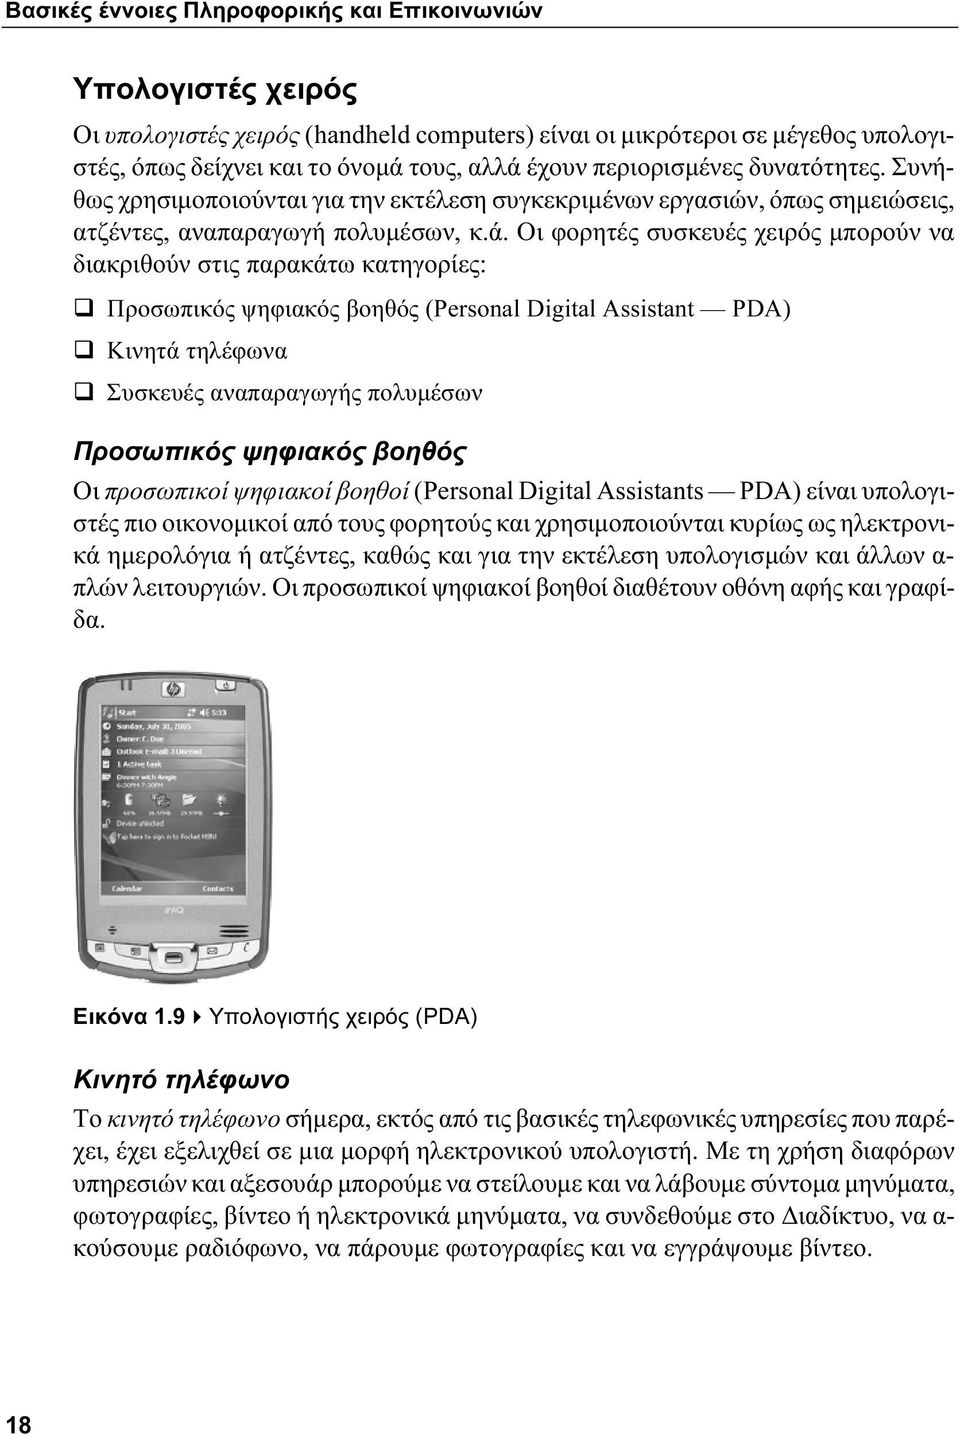 Οι φορητές συσκευές χειρός μπορούν να διακριθούν στις παρακάτω κατηγορίες: Προσωπικός ψηφιακός βοηθός (Personal Digital Assistant PDA) Κινητά τηλέφωνα Συσκευές αναπαραγωγής πολυμέσων Προσωπικός